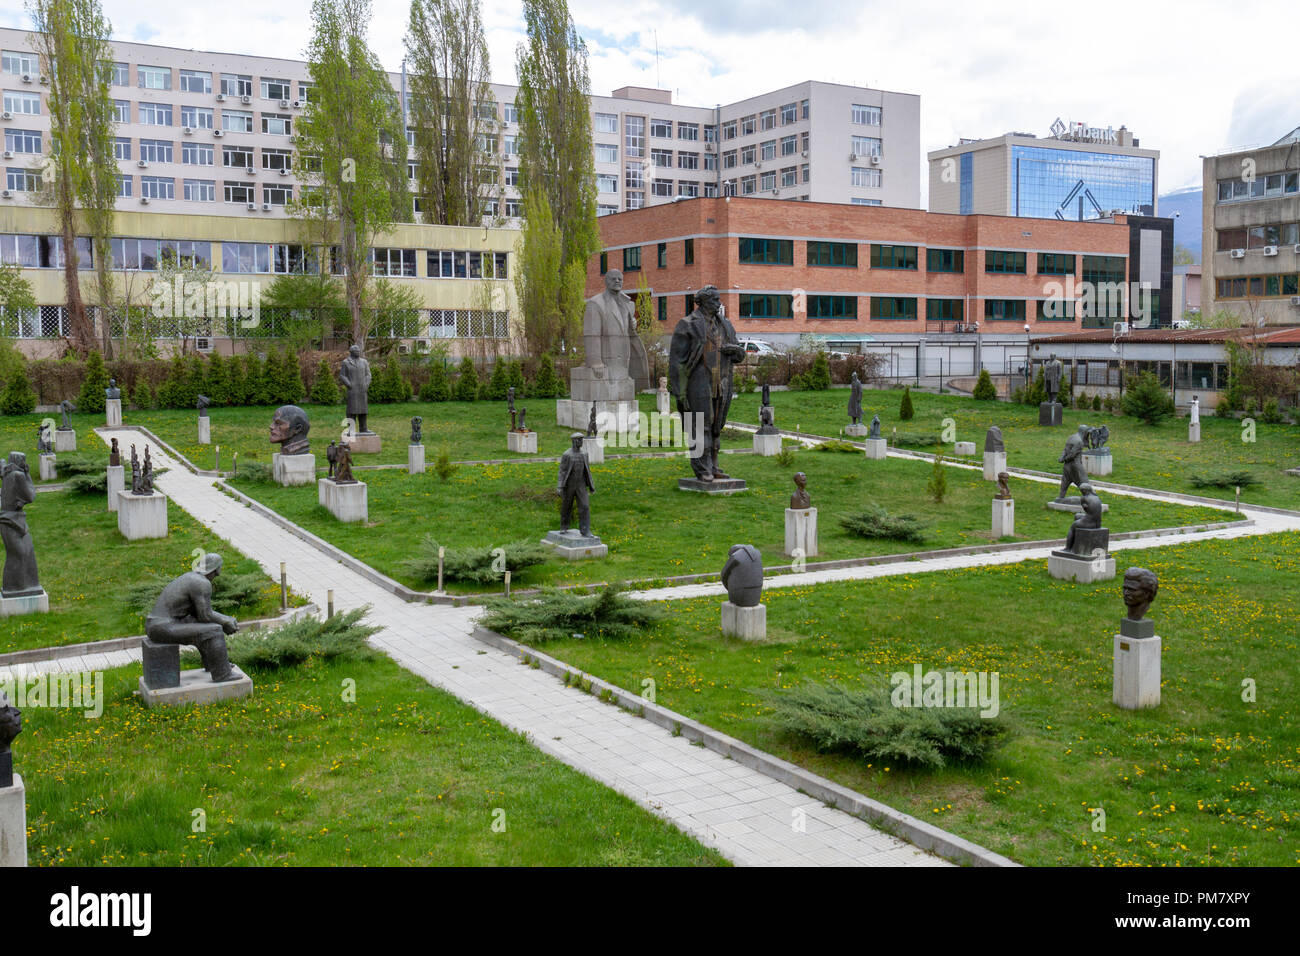 Allgemeine Ansicht des Museums der Sozialistischen Kunst outdoor Sculpture Garden Anzeige, Sofia, Bulgarien. Stockfoto